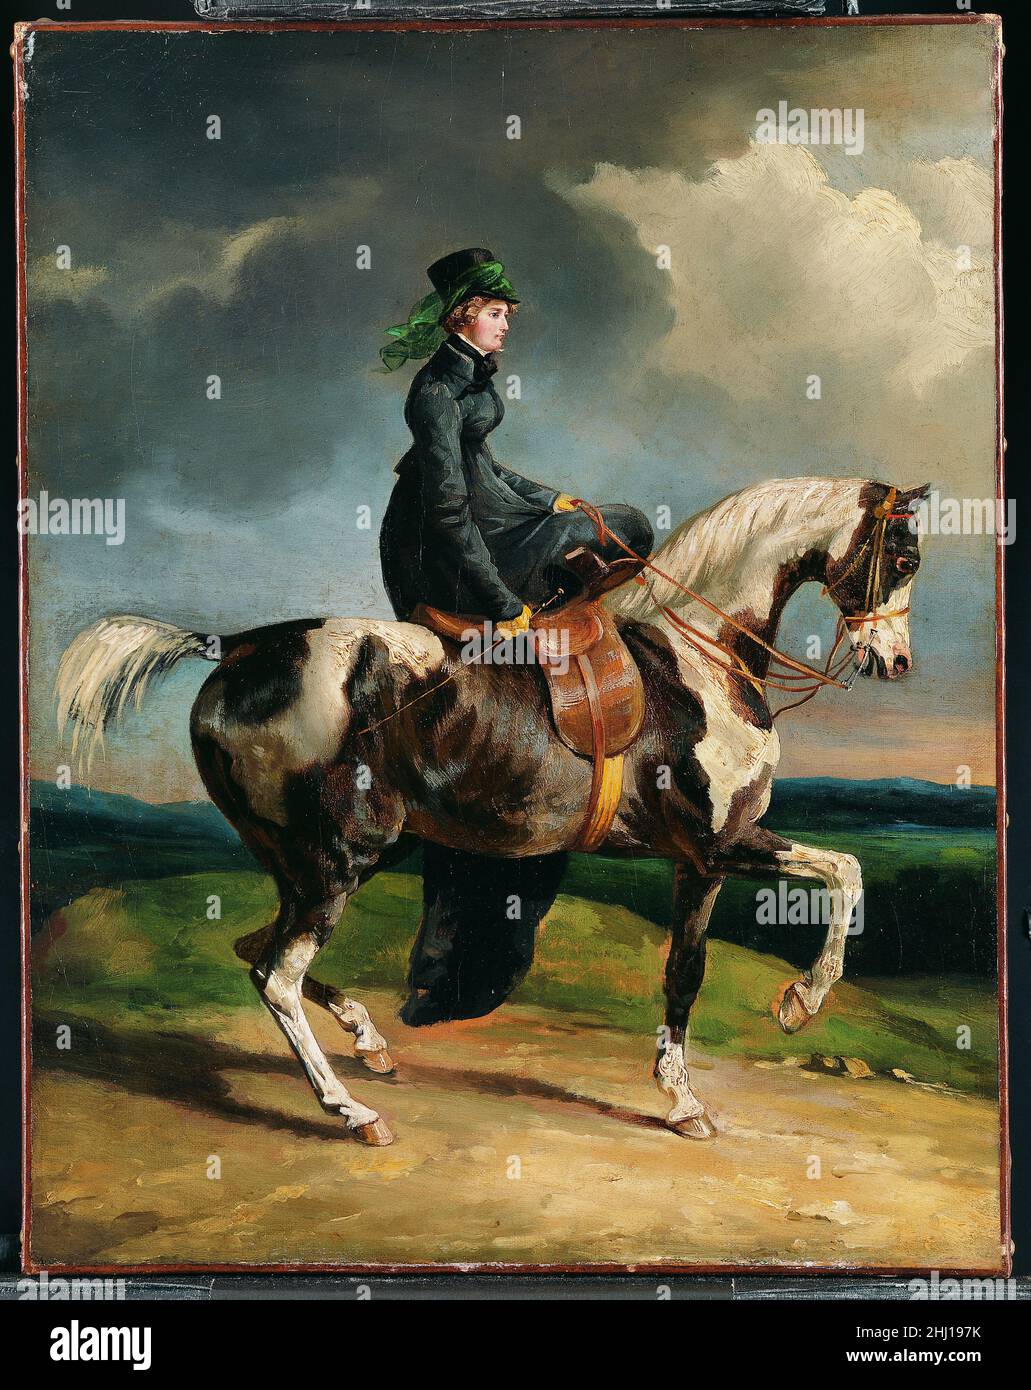 Pferdewoman 1820 oder später Théodore Gericault Gericault studierte Pferde sein ganzes Leben lang intensiv, und sein Aufenthalt in England 1820–21 inspirierte eine Gruppe von Werken, die elegante Aspekte von Reiten und Sport darstellten. Die Identität dieser modisch geatmüden Frau, die auf dem Seitenschwungtuch reitet, wird spekuliert. Pferd und Reiter werden in einem friesartigen Profil dargestellt, wobei die ruhige Kontrolle, die sie über ihren Berg ausübt, in krassem Kontrast zum unausstehlichen Himmel steht, der beide nicht ablenkt. Gericault versöhnt hier das traditionelle französische Bild einer Pferdefrau oder Amazone, ein Begriff, der fr Stockfoto